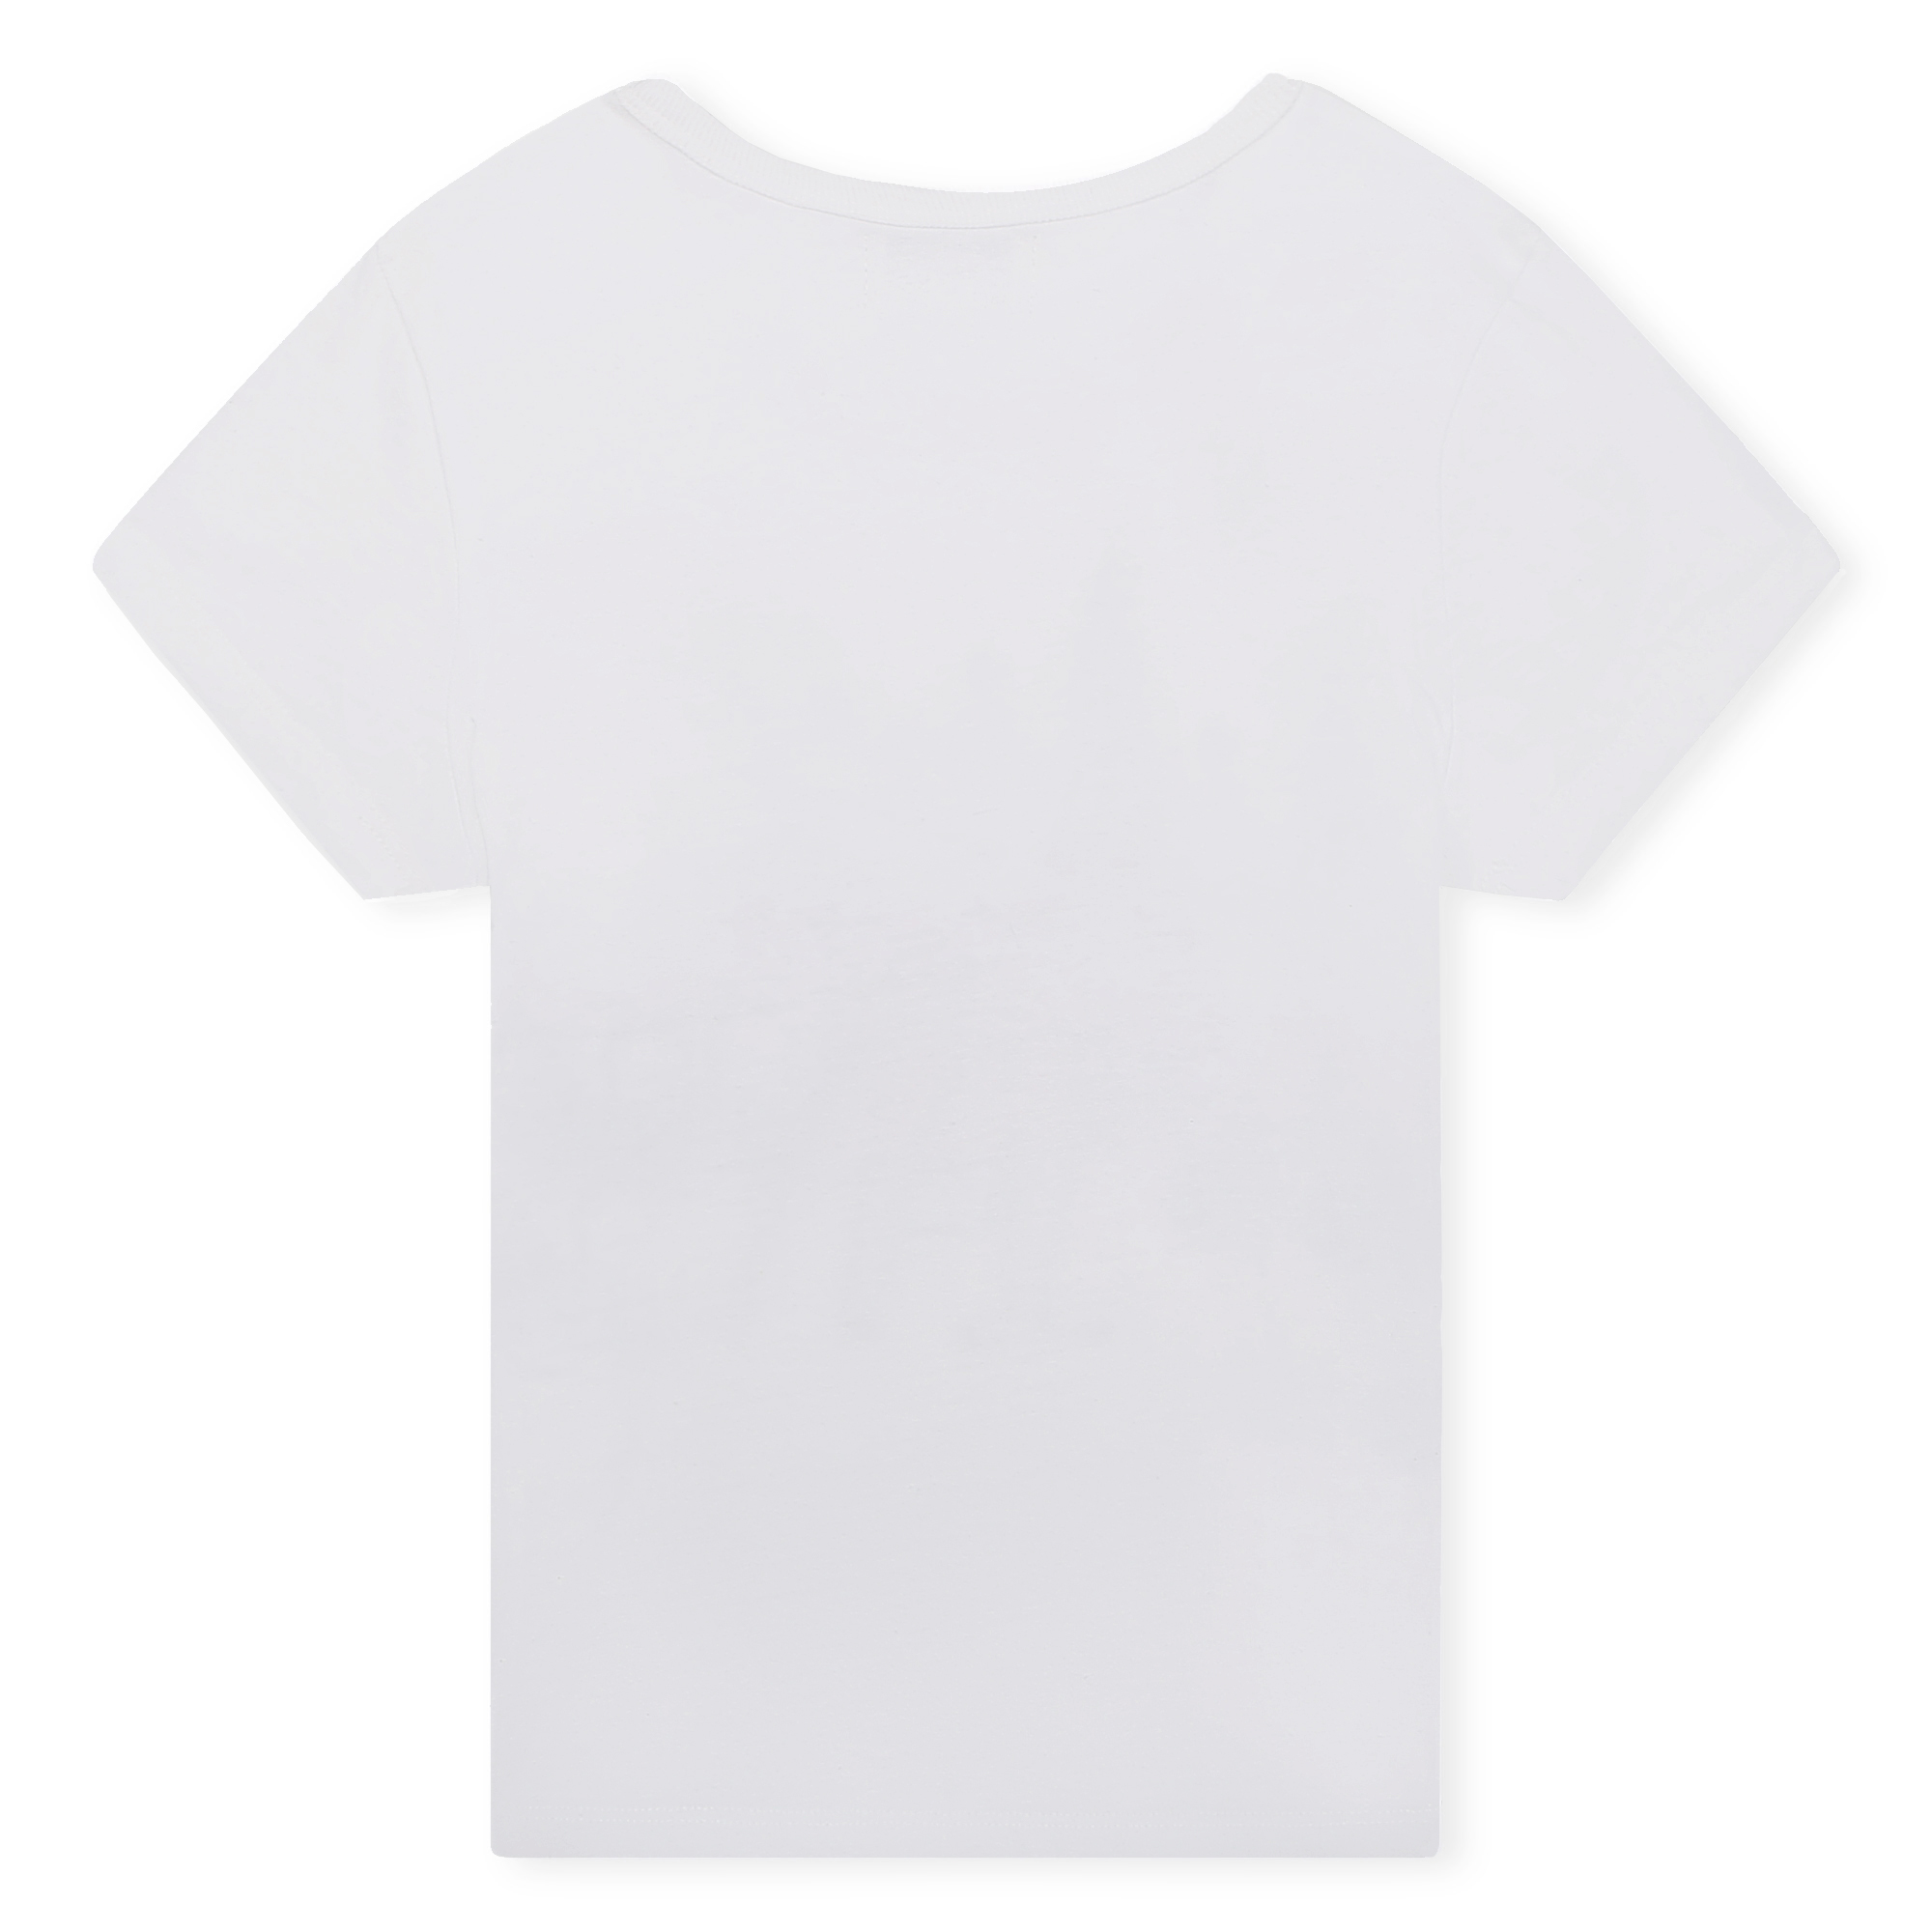 T-shirt met print op de borst SONIA RYKIEL Voor